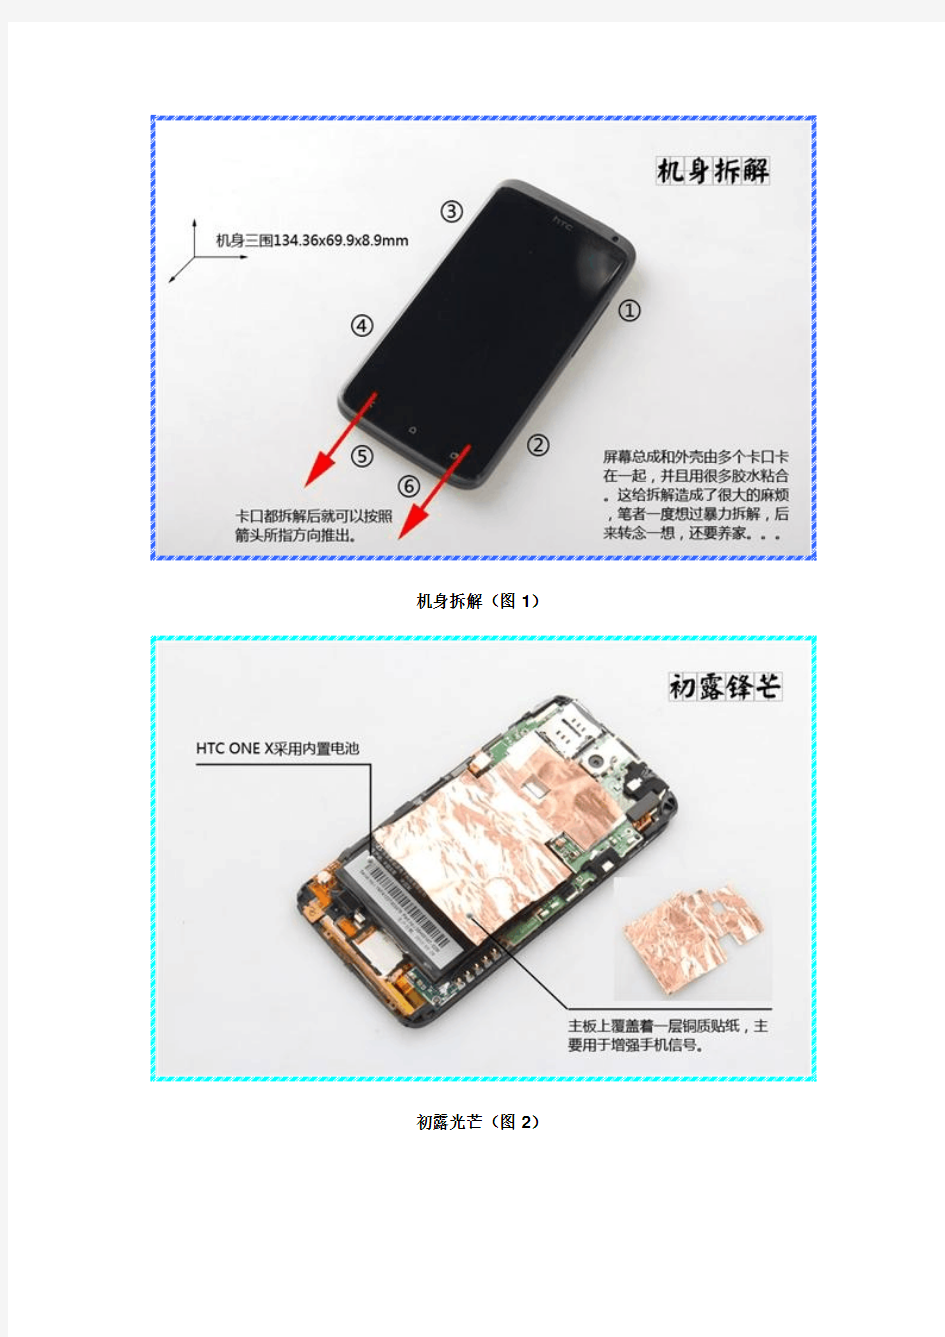 HTC One X详细拆解图